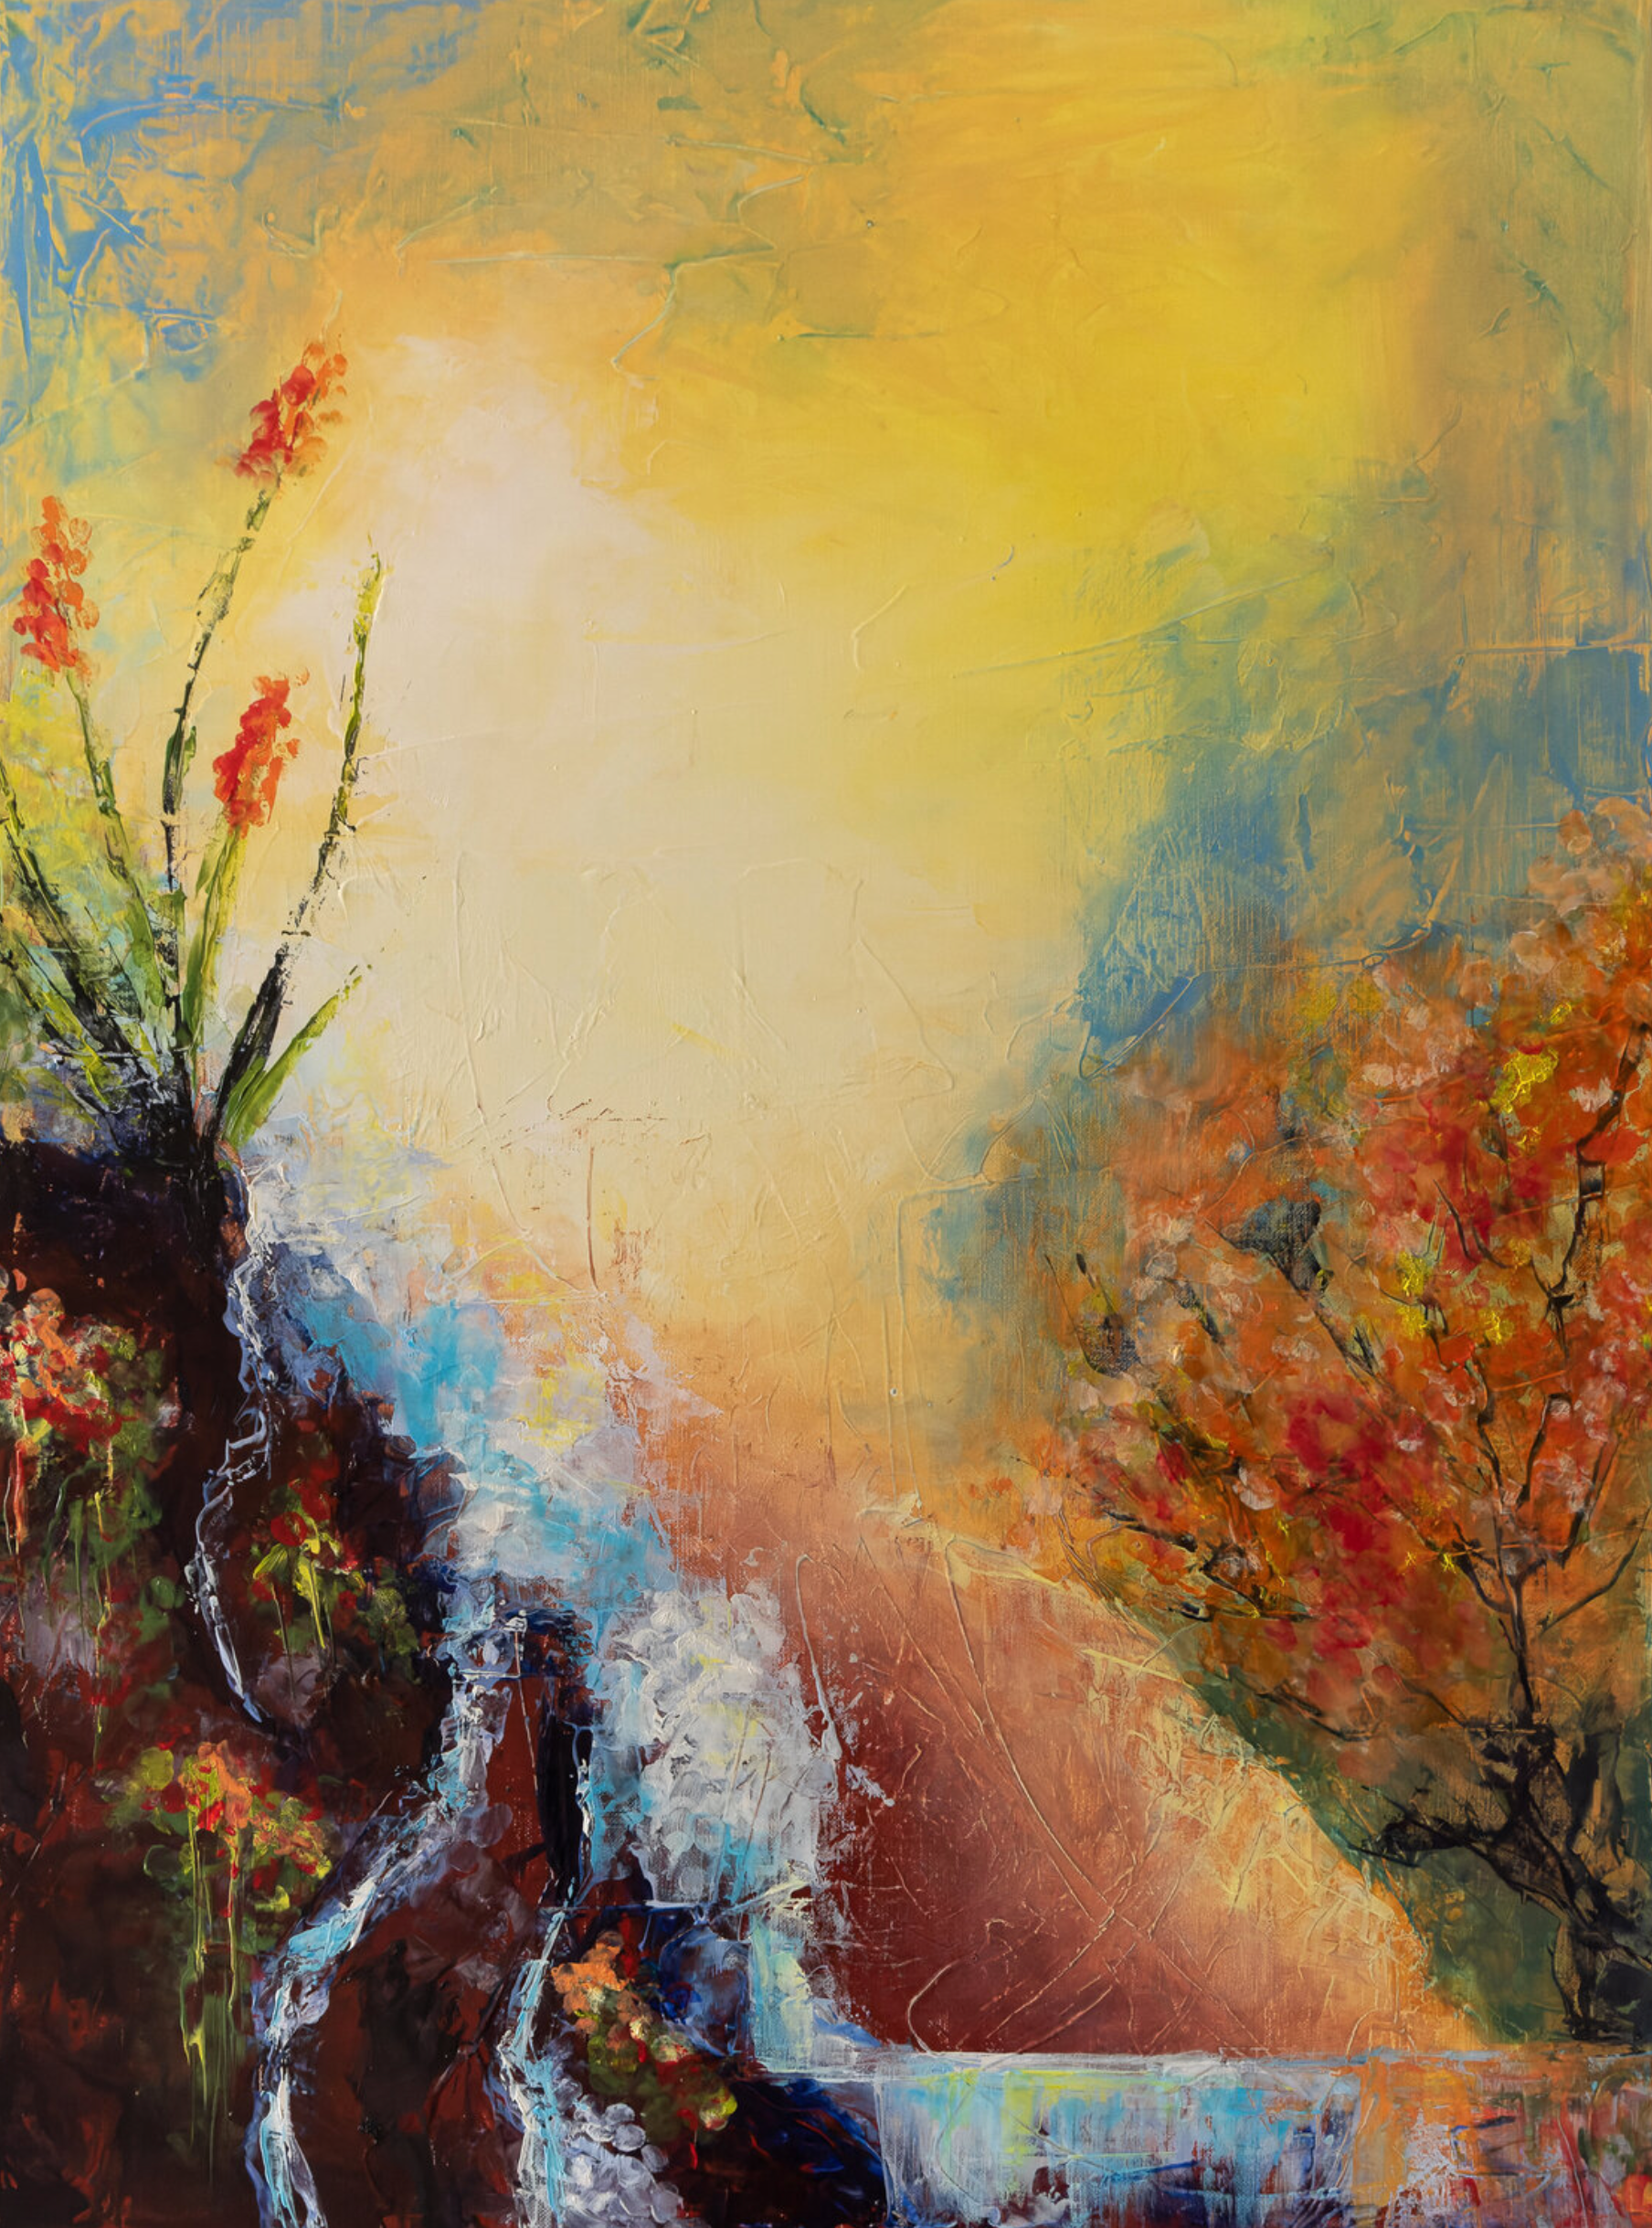 La peinture abstraite "Lascive" de Françoise Dugourd-Caput représente le paysage imaginaire d'une cascade dévalant une pente, caressant les rochers bordés de plantes fleuries et s'accordant avec un arbre en fleurs, dégageant une atmosphère pleine de sensualité.